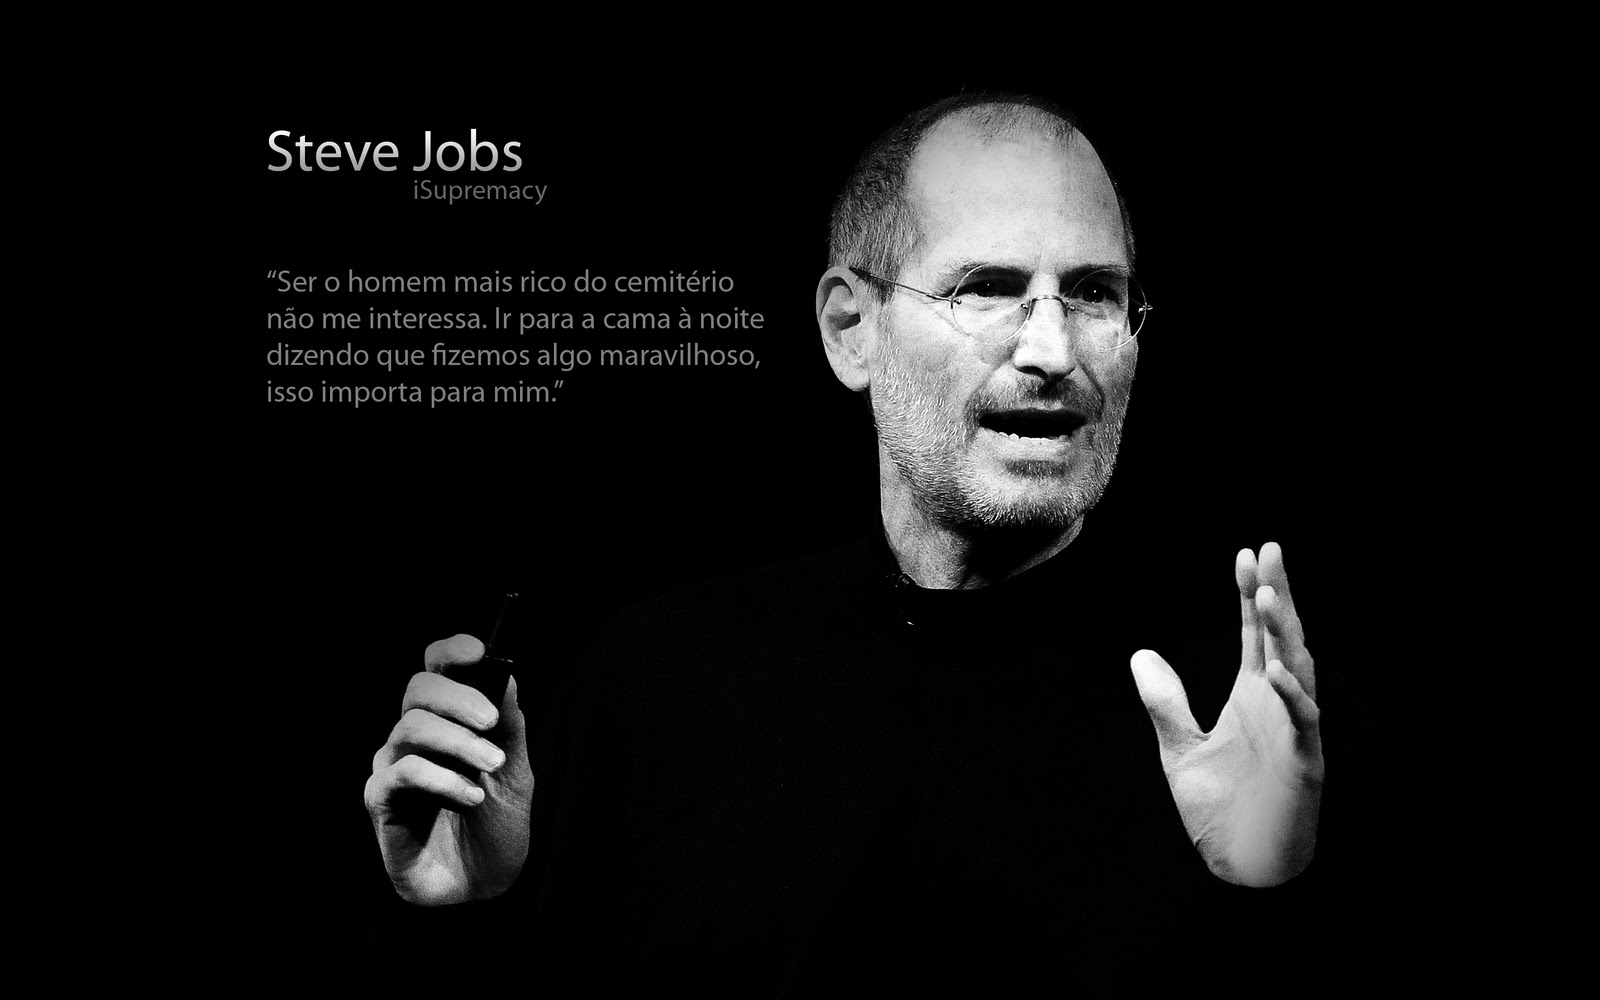 Wallpaper Steve Jobs Jpg